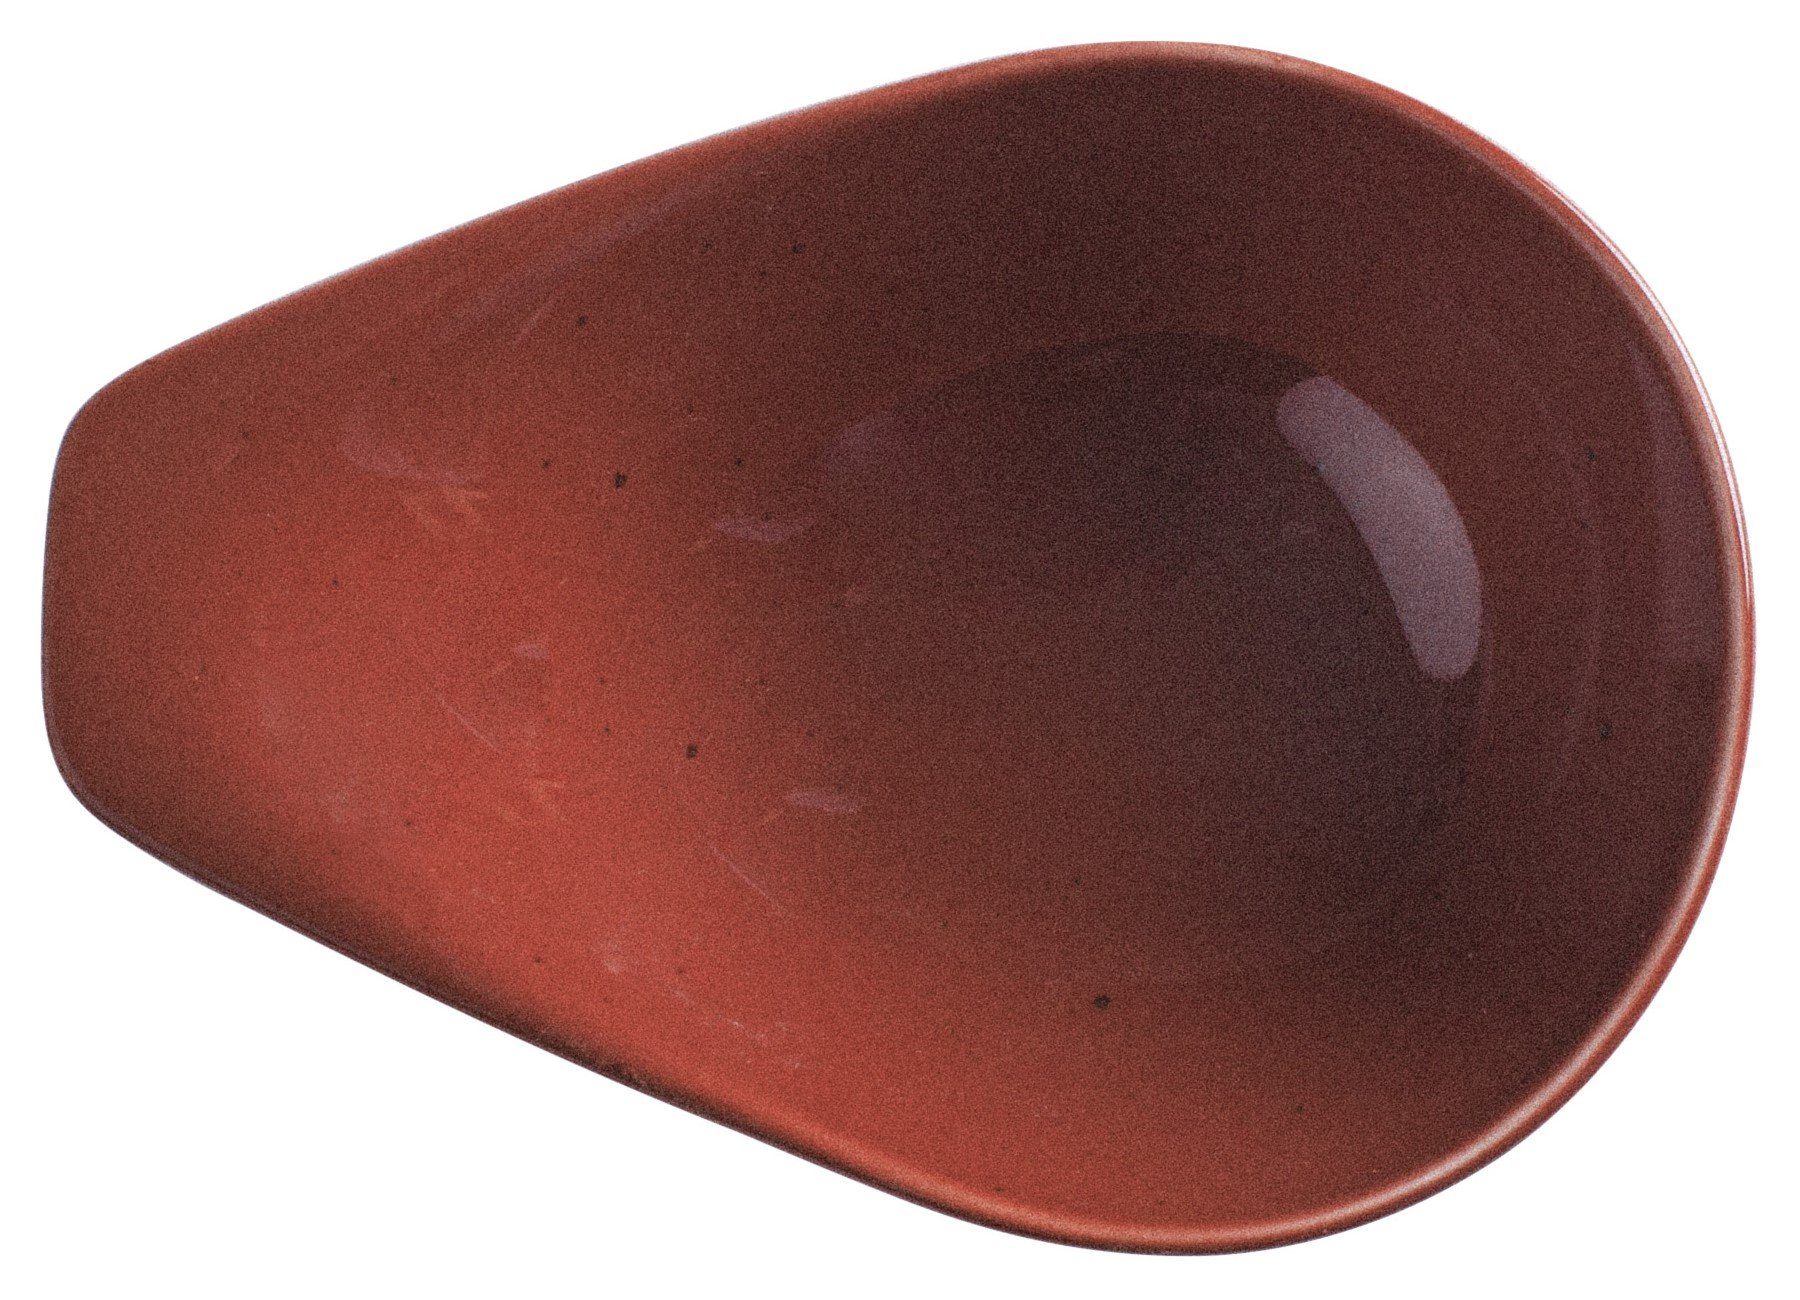 Kahla Made Porzellan, Germany Homestyle l, red Handglasiert, 0,40 siena Suppenschale in